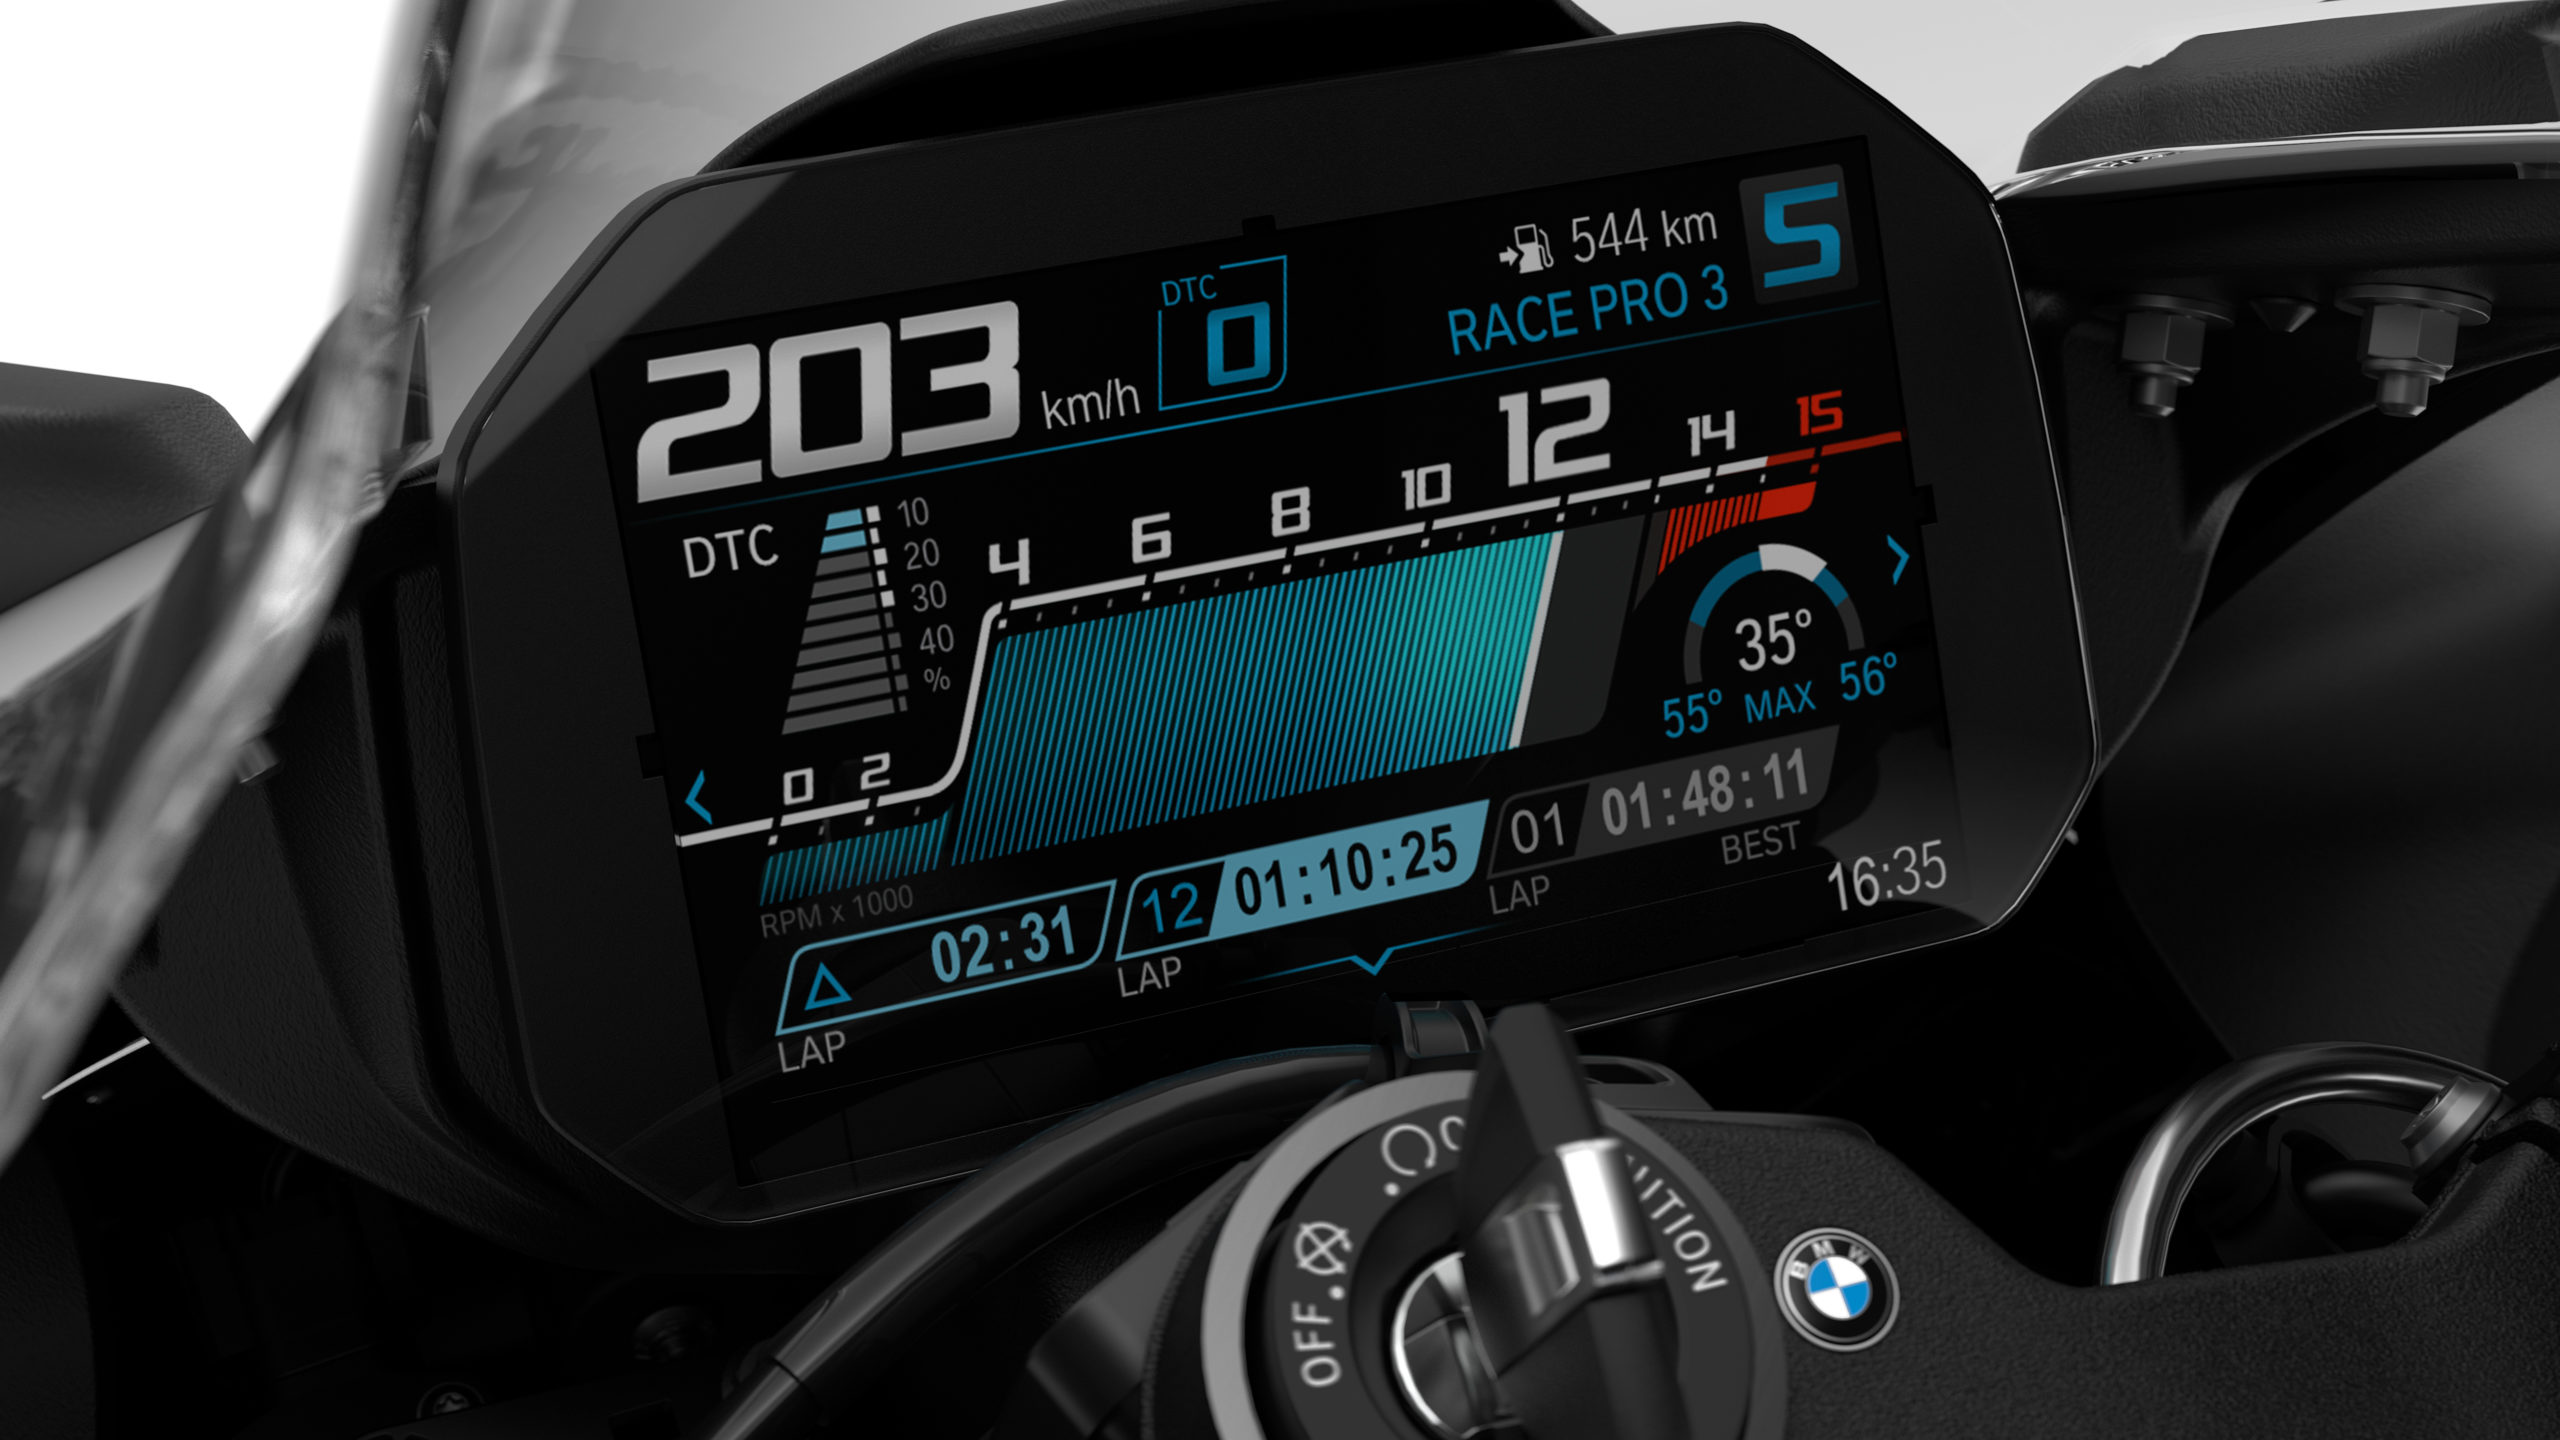 Nova BMW S 1000 RR chega às lojas; confira os preços e detalhes